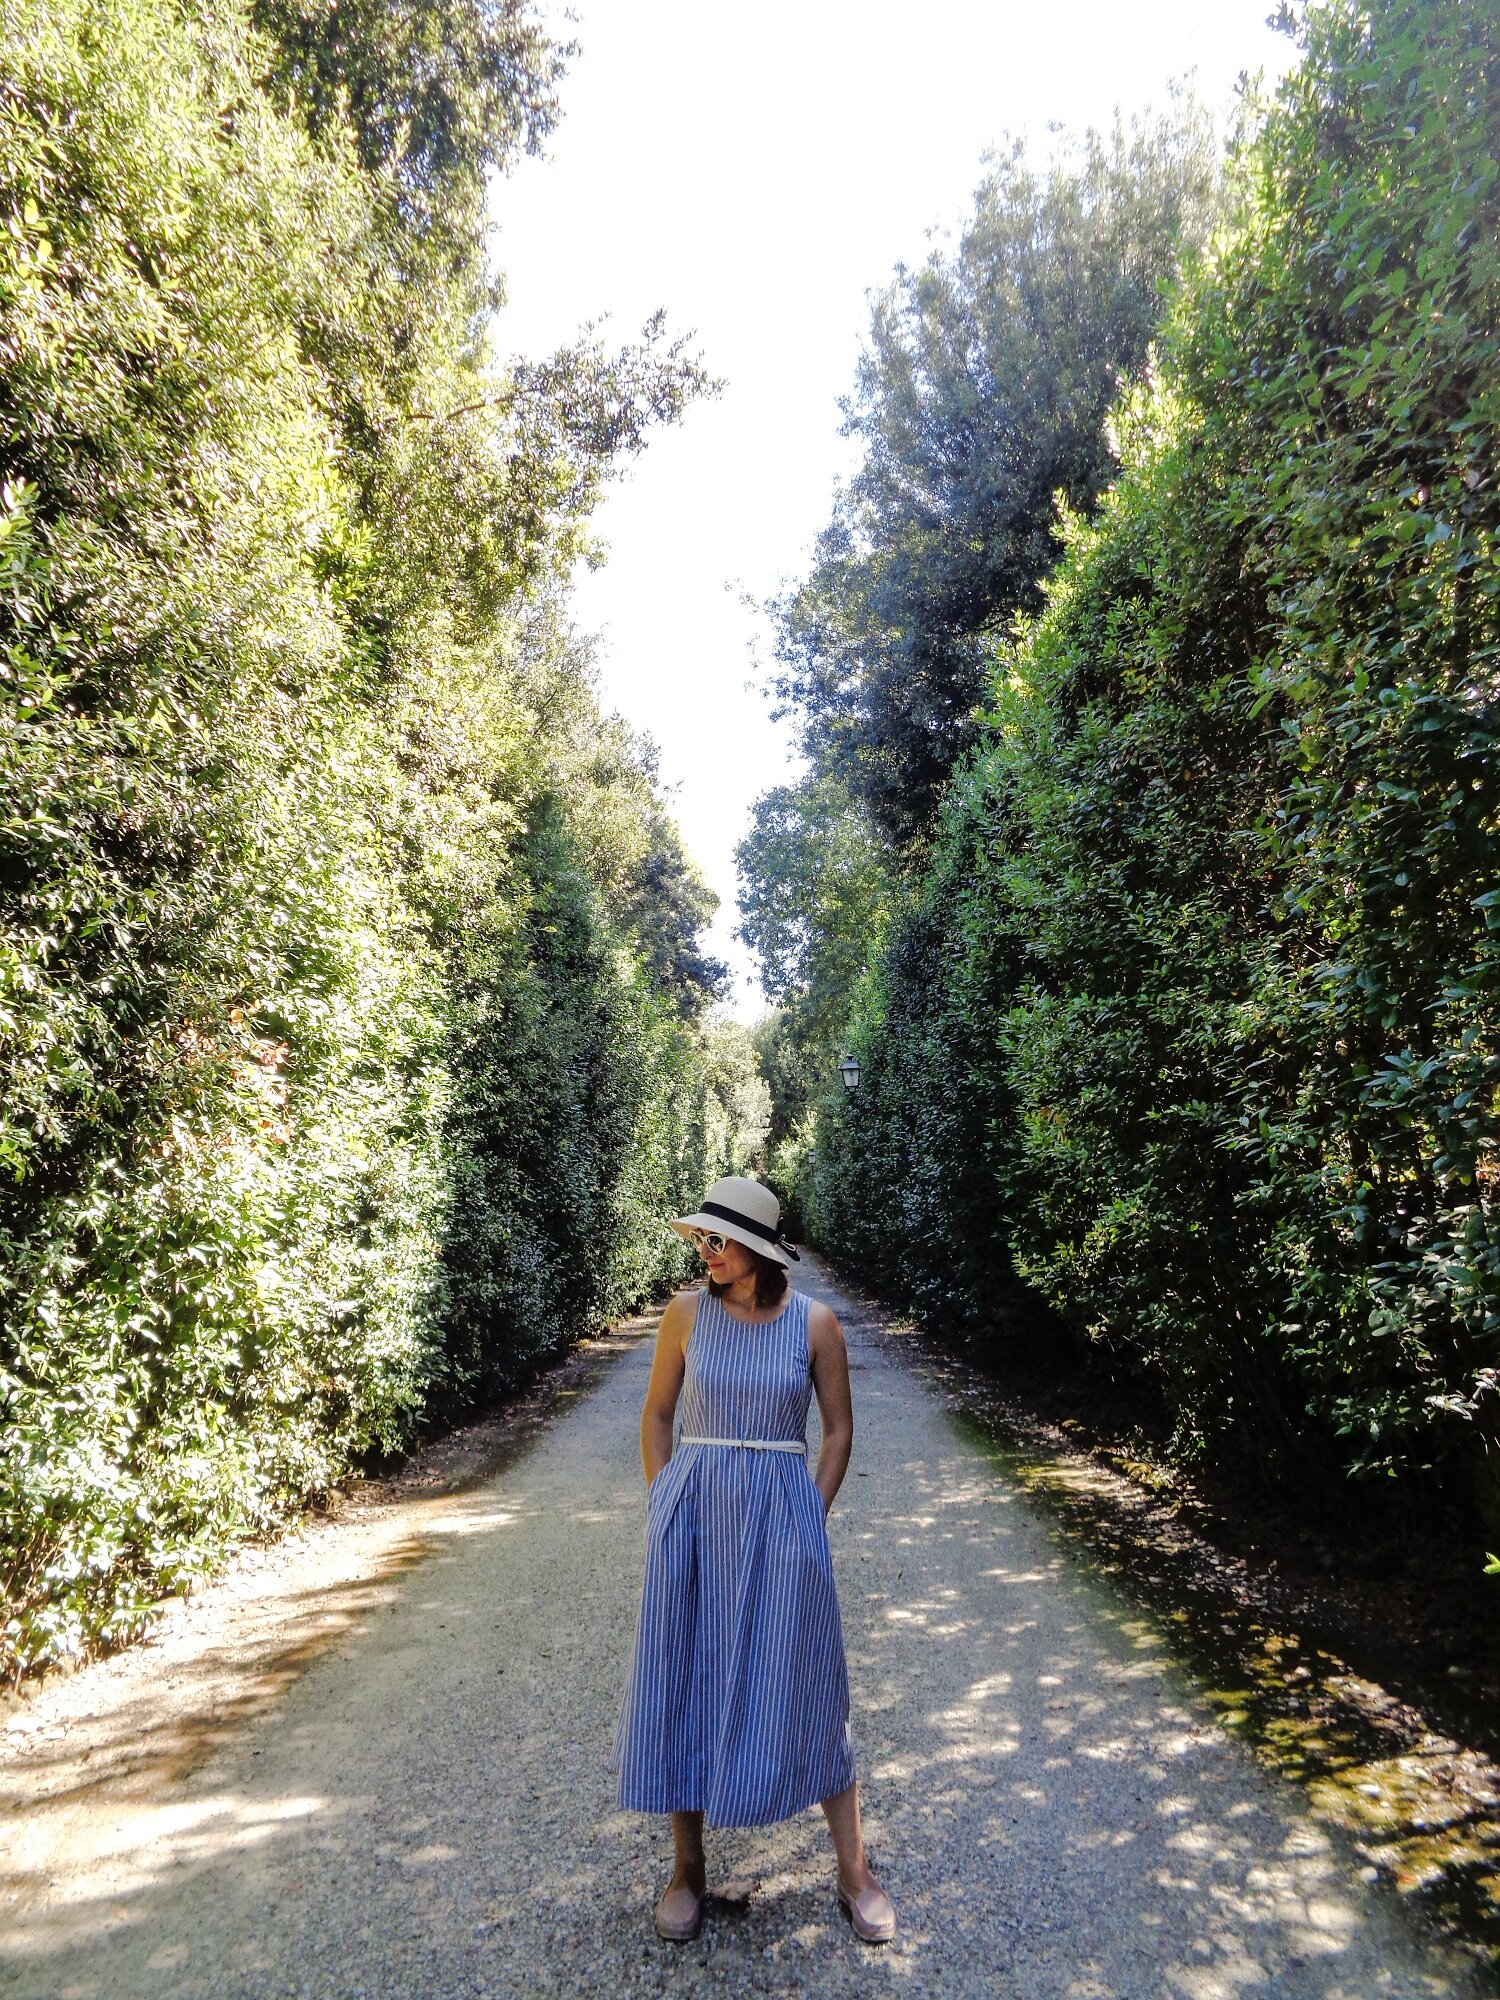  Boboli Gardens, Florence, Italy | Blooming Magnolias Blog | Travel, Europe, Tuscany 